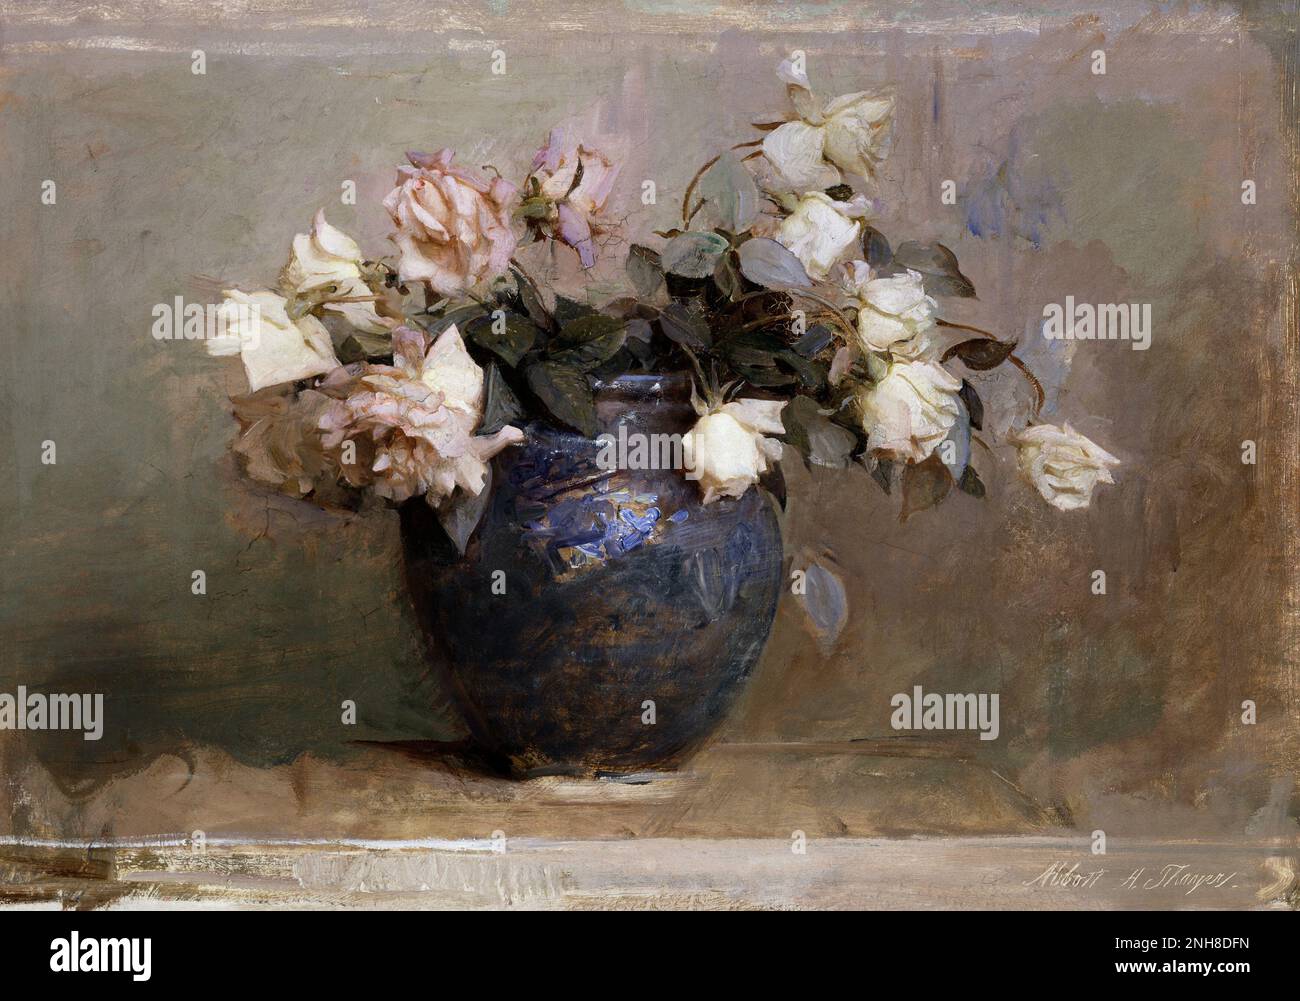 Roses (1890) peinture en haute résolution par Abbott Handerson Thayer. Huile sur toile de peinture de roses dans un vase. Banque D'Images